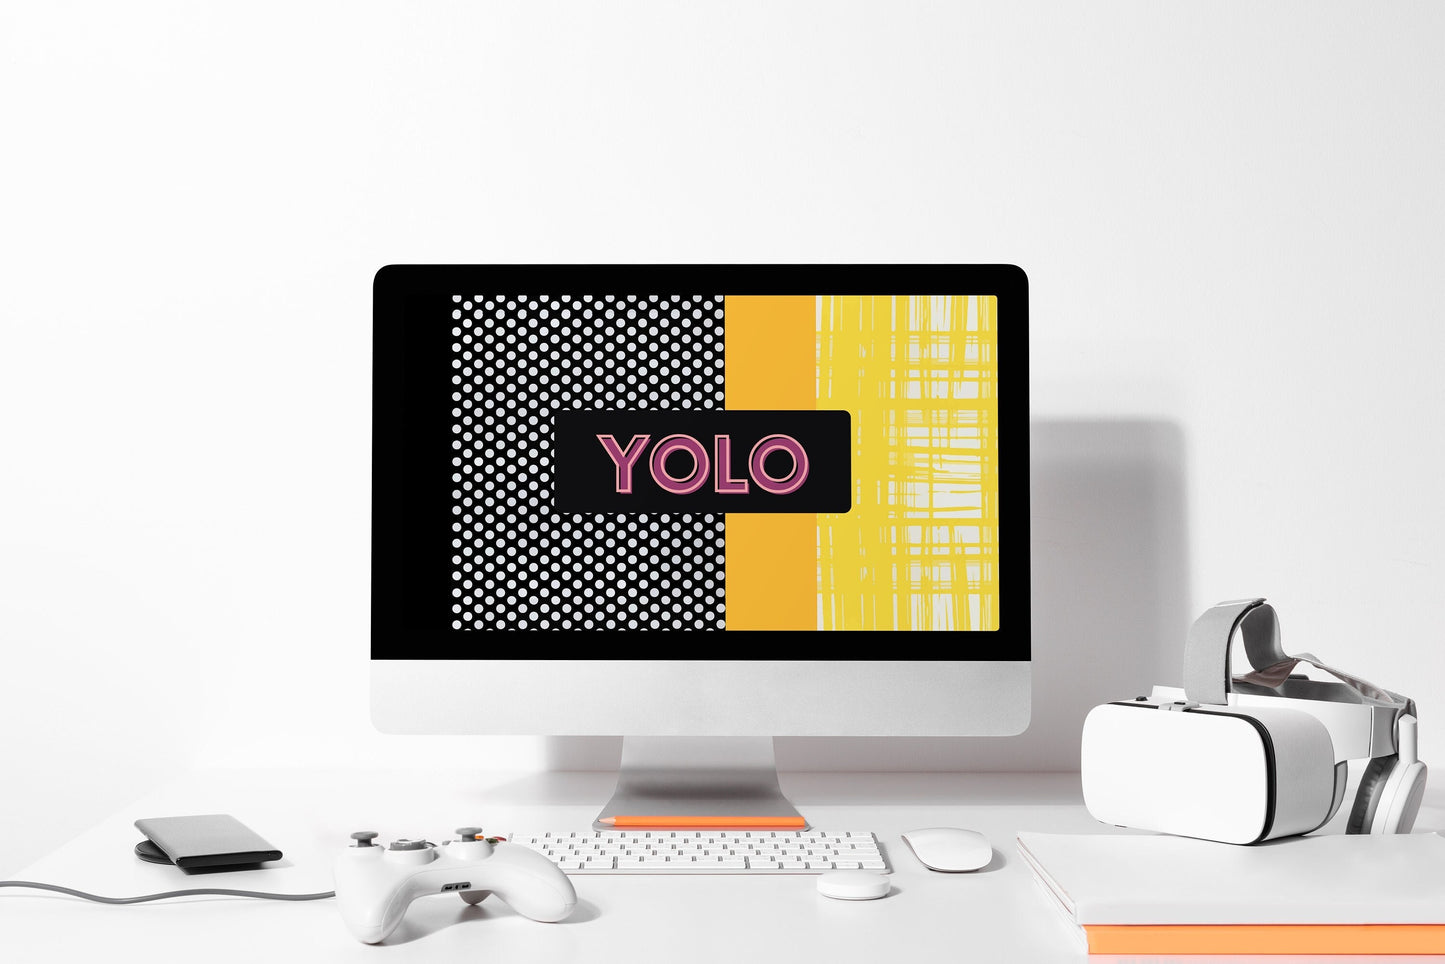 YOLO Desktop Wallpaper, 1920x1080 px, PNG File